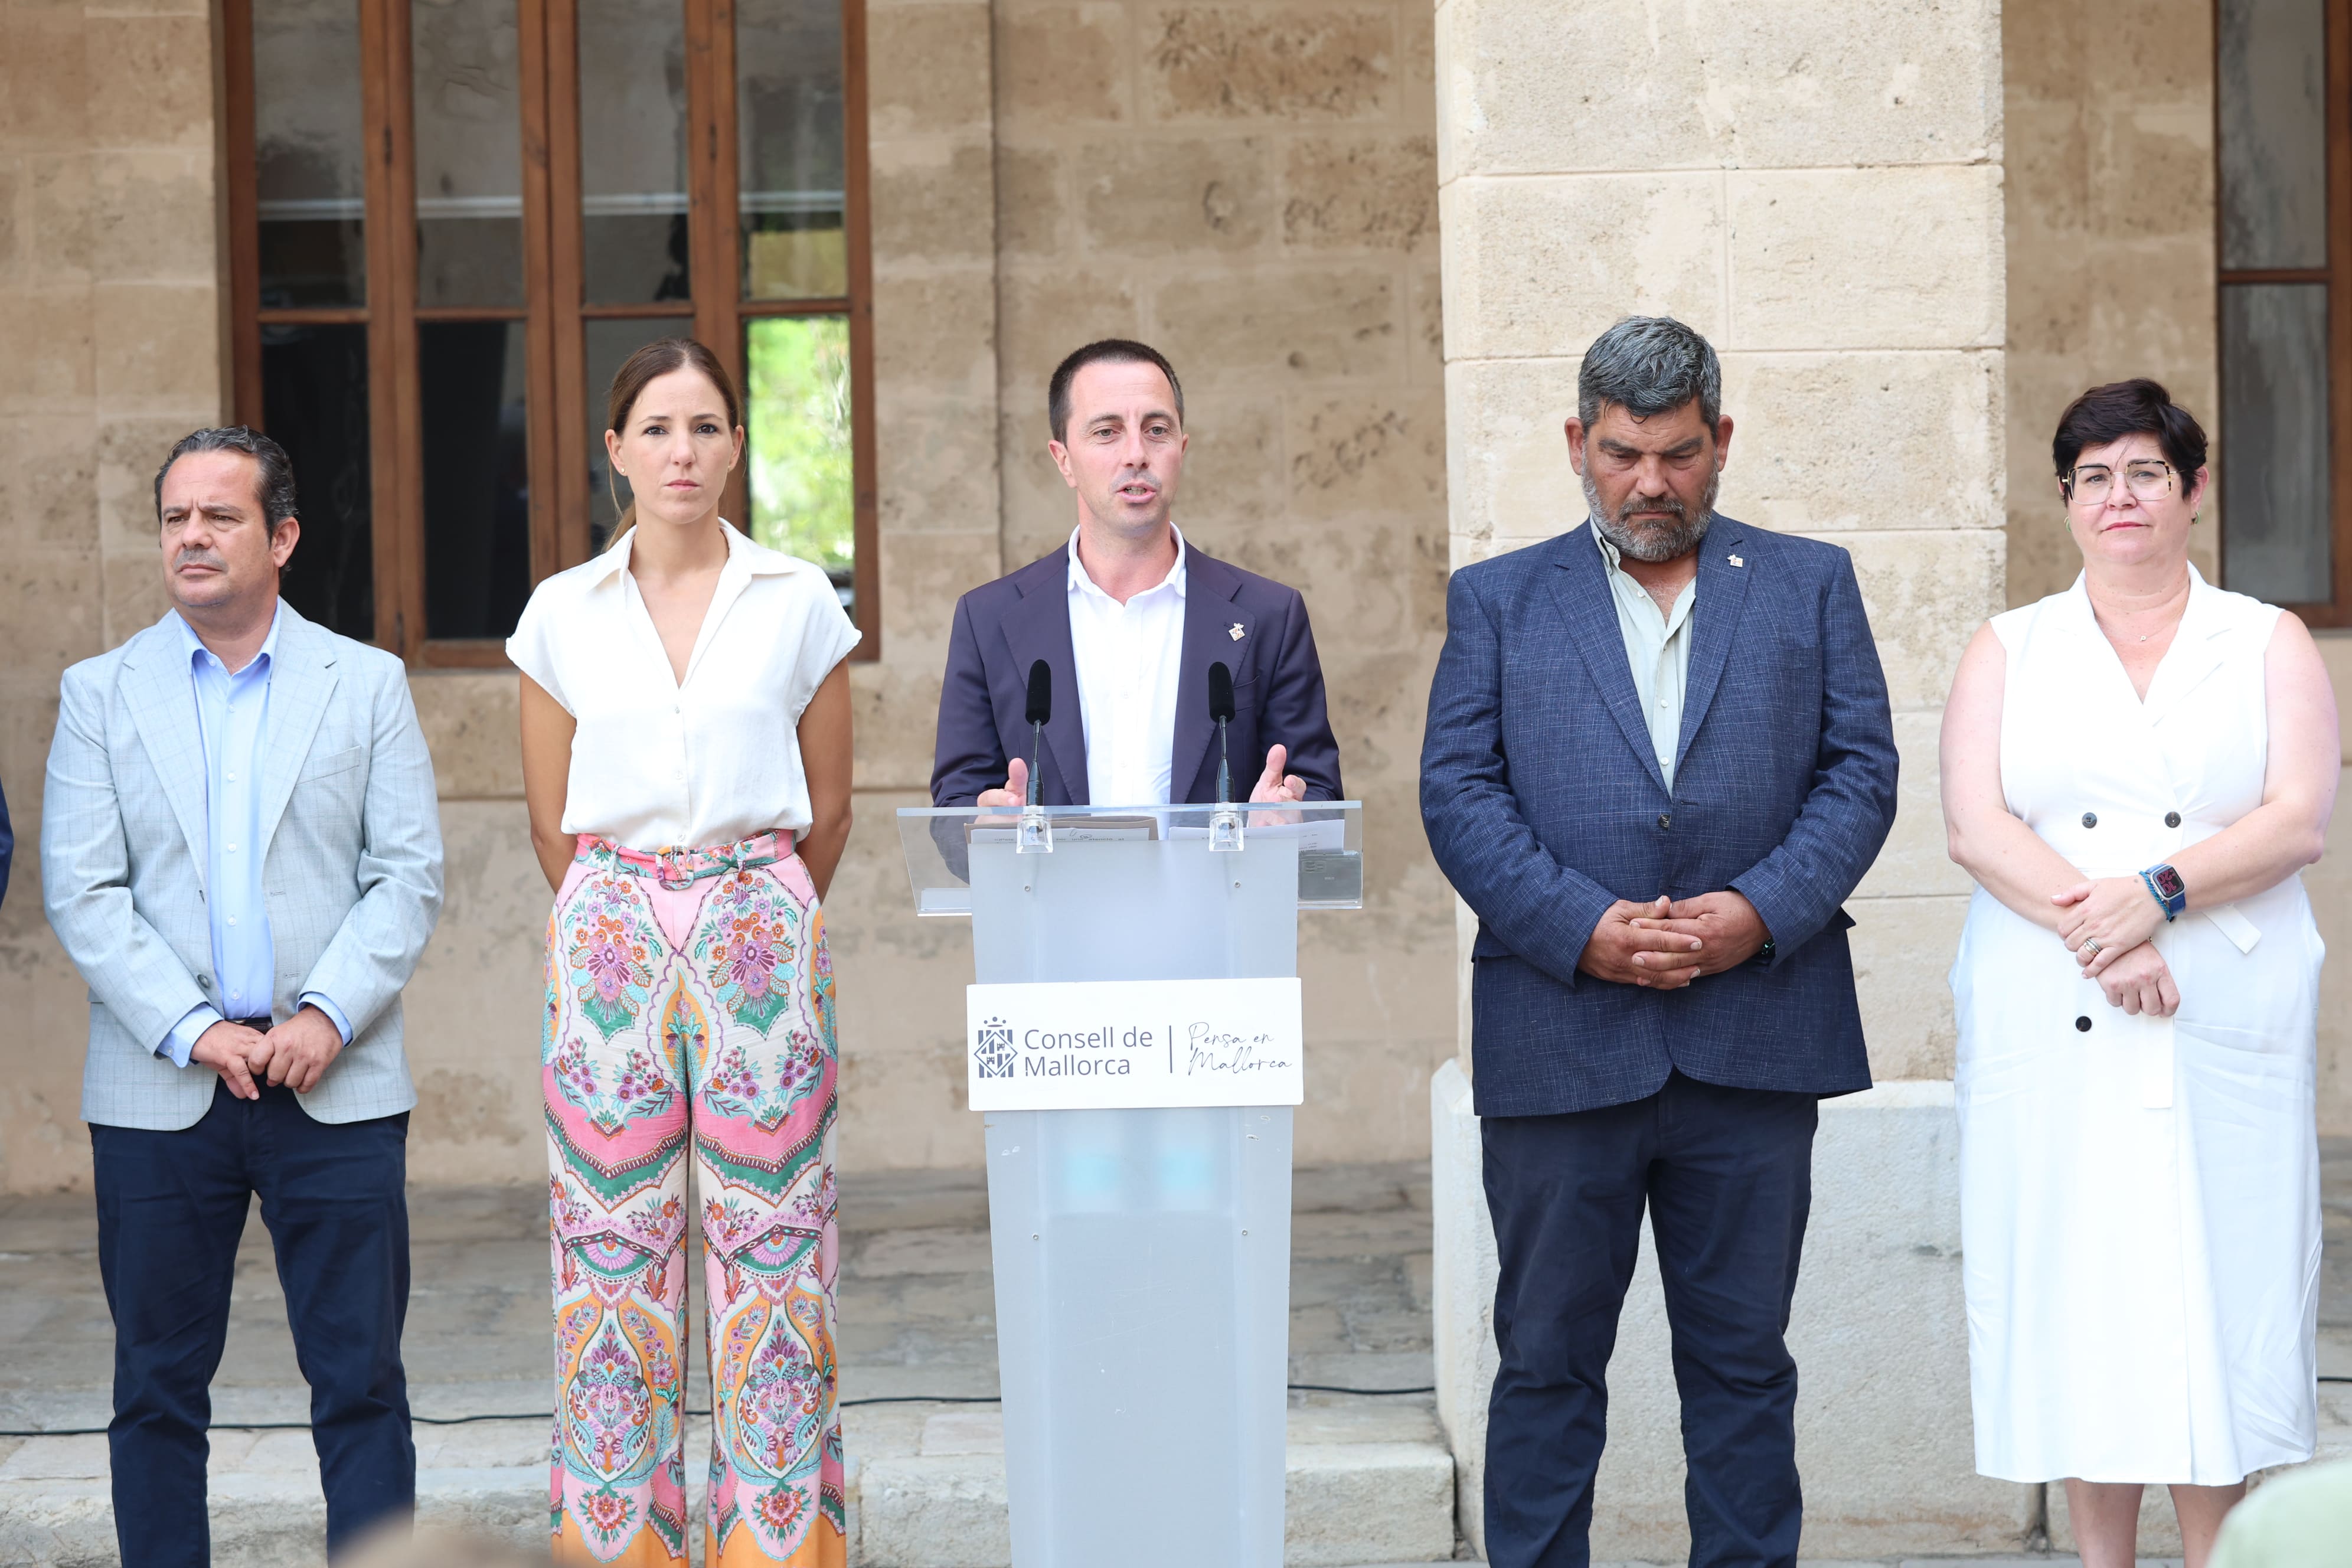 Roda de premsa de l'inici de curs polític del Consell de Mallorca.